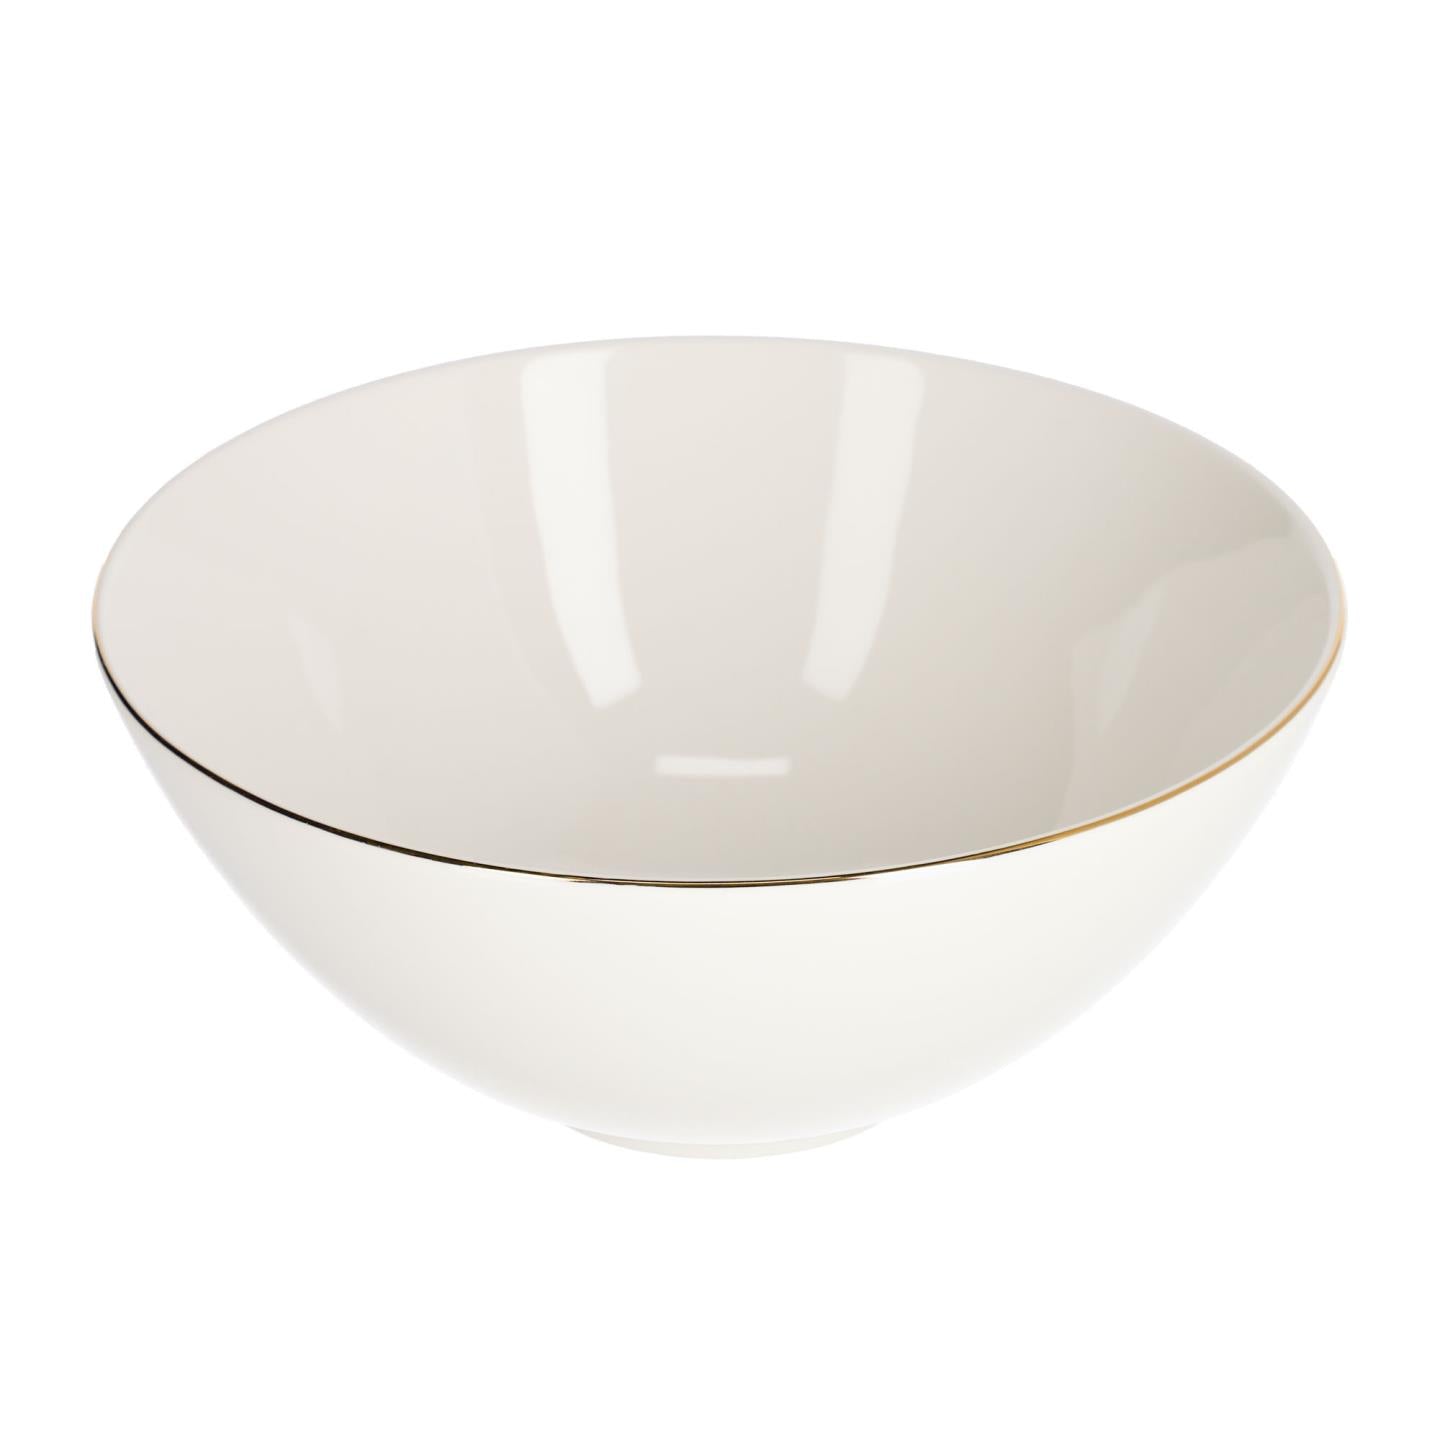 Taisia large porcelain bowl in white